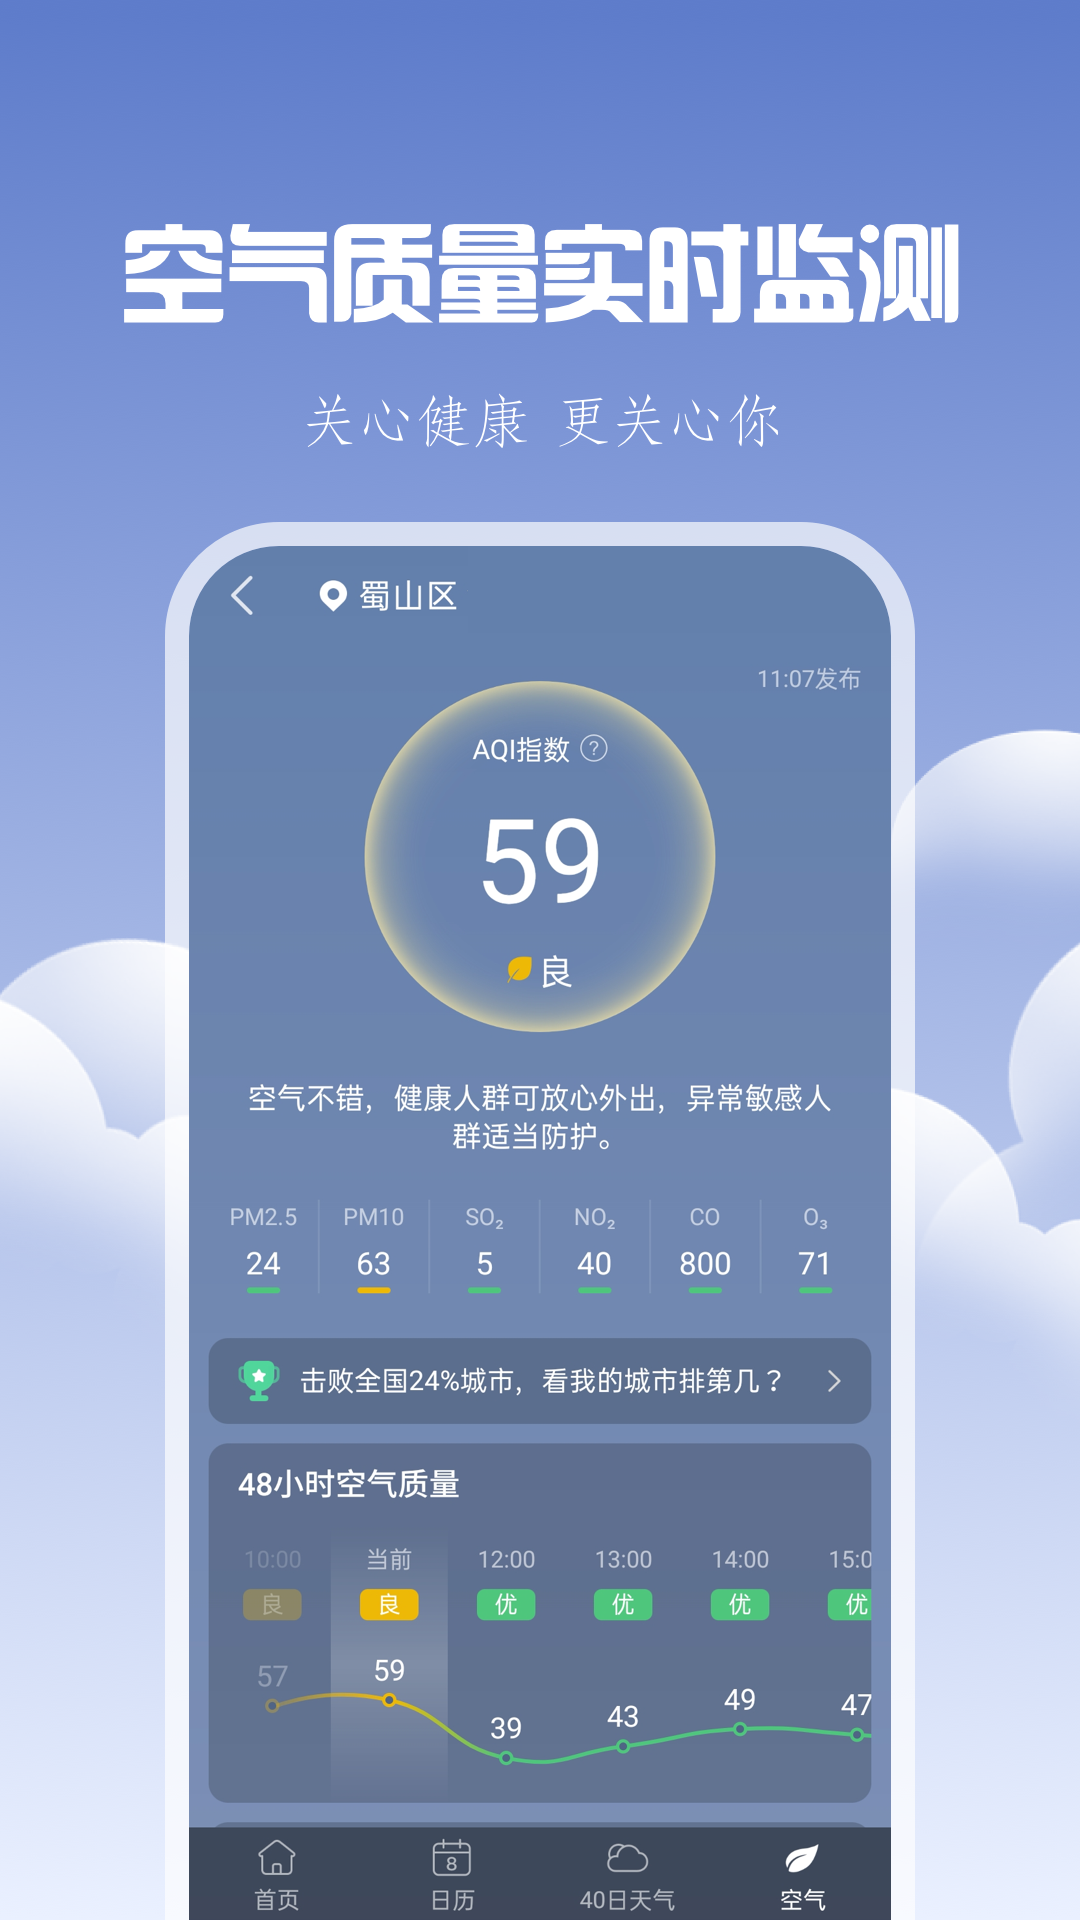 晴时天气app下载,晴时天气app安卓版 v1.0